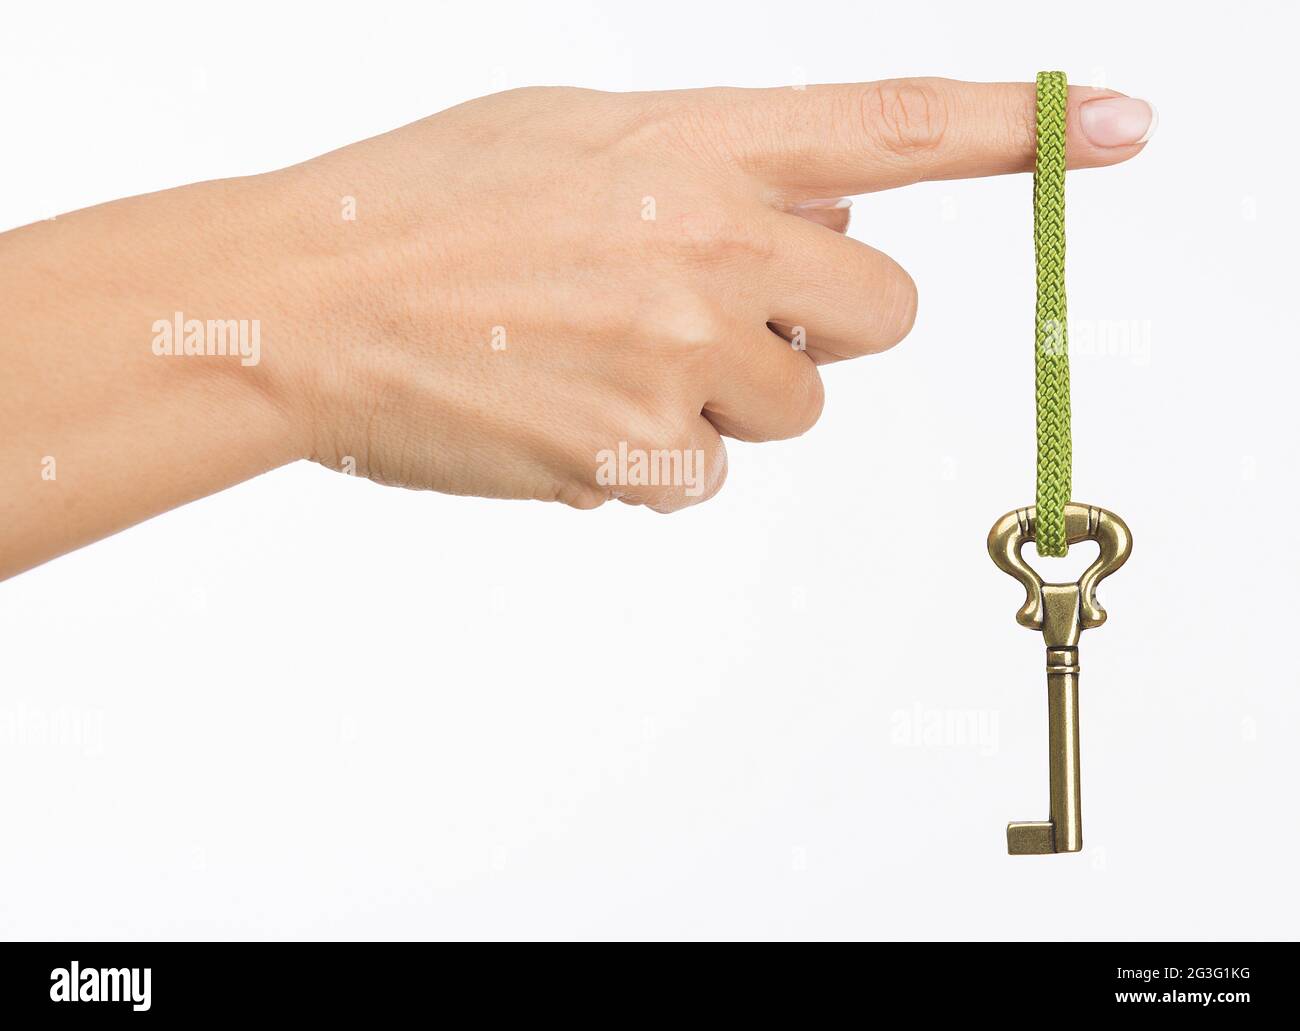 La main avec ancienne clé Banque D'Images